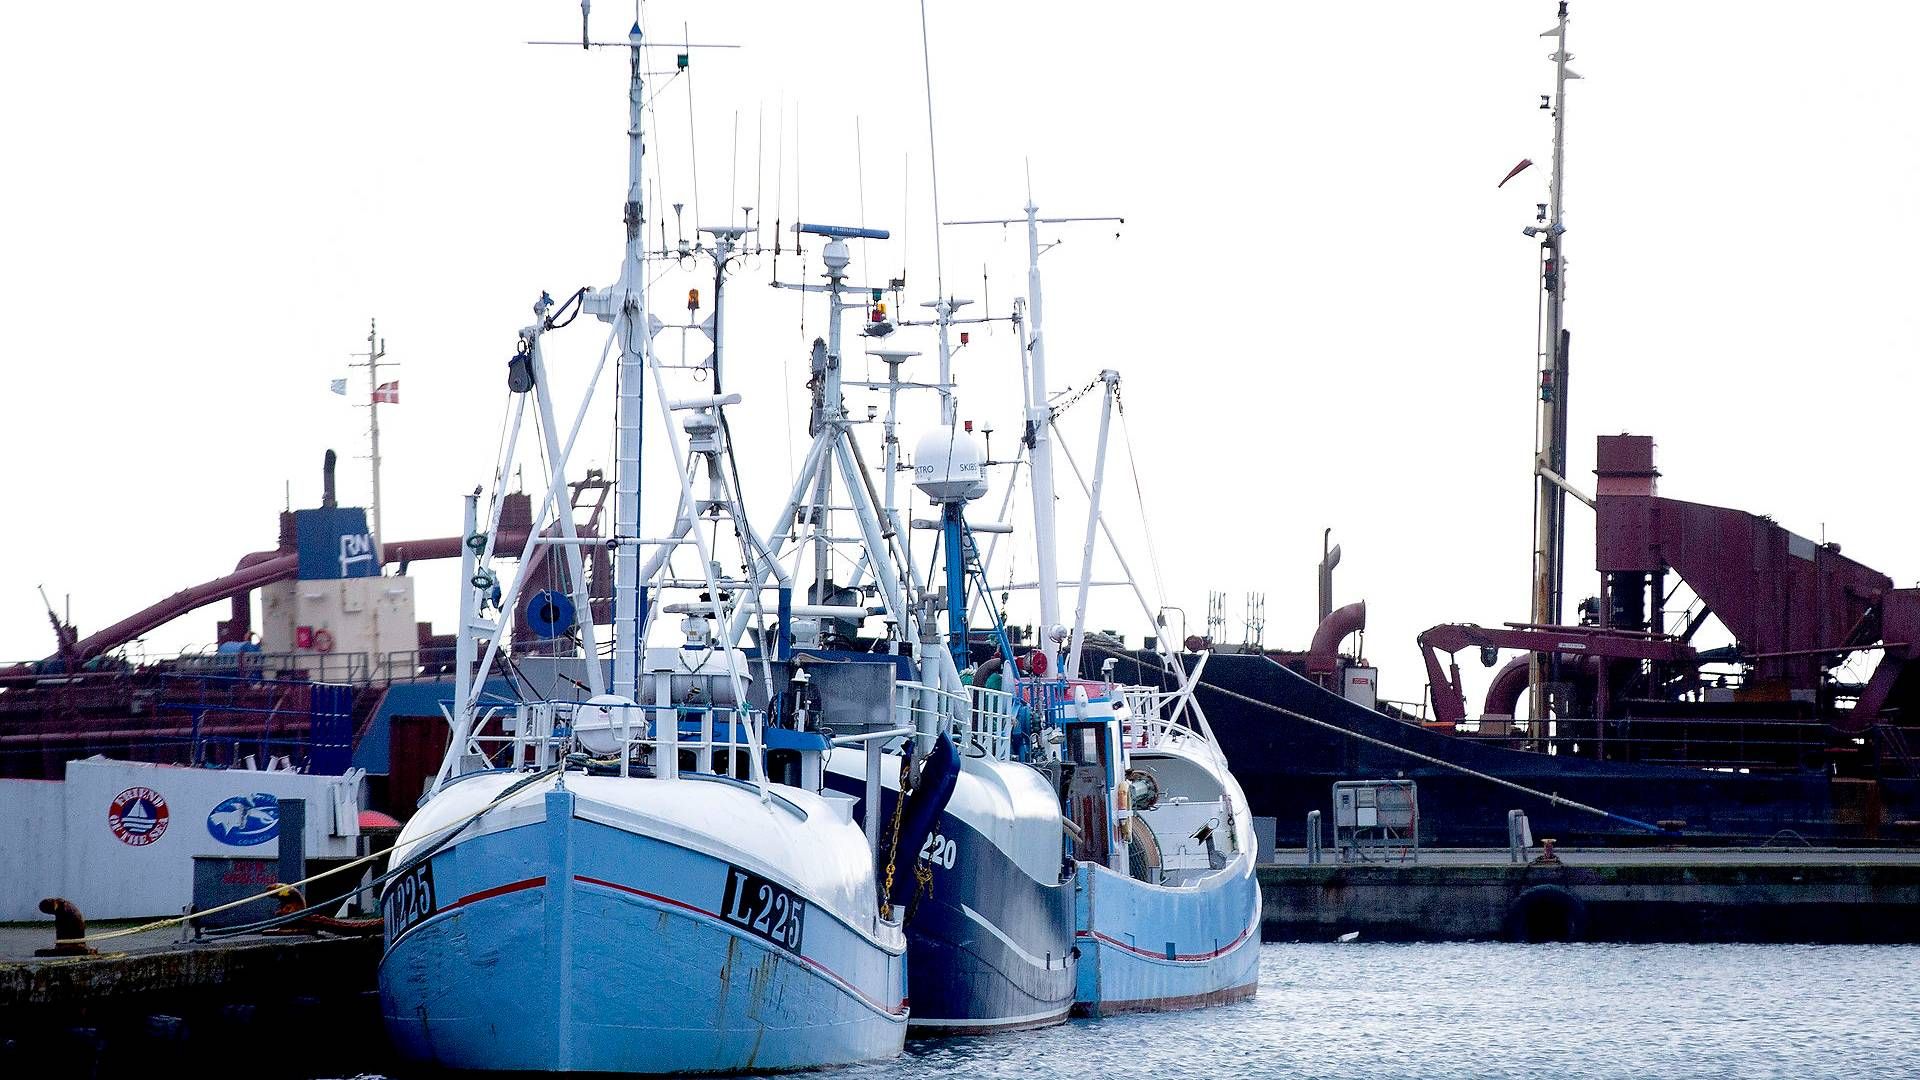 Ifølge fiskeriminister Rasmus Prehn er det ikke tilladt at kompensere fiskere direkte for tab som følge af brexit. | Foto: Finn Frandsen/Ritzau Scanpix